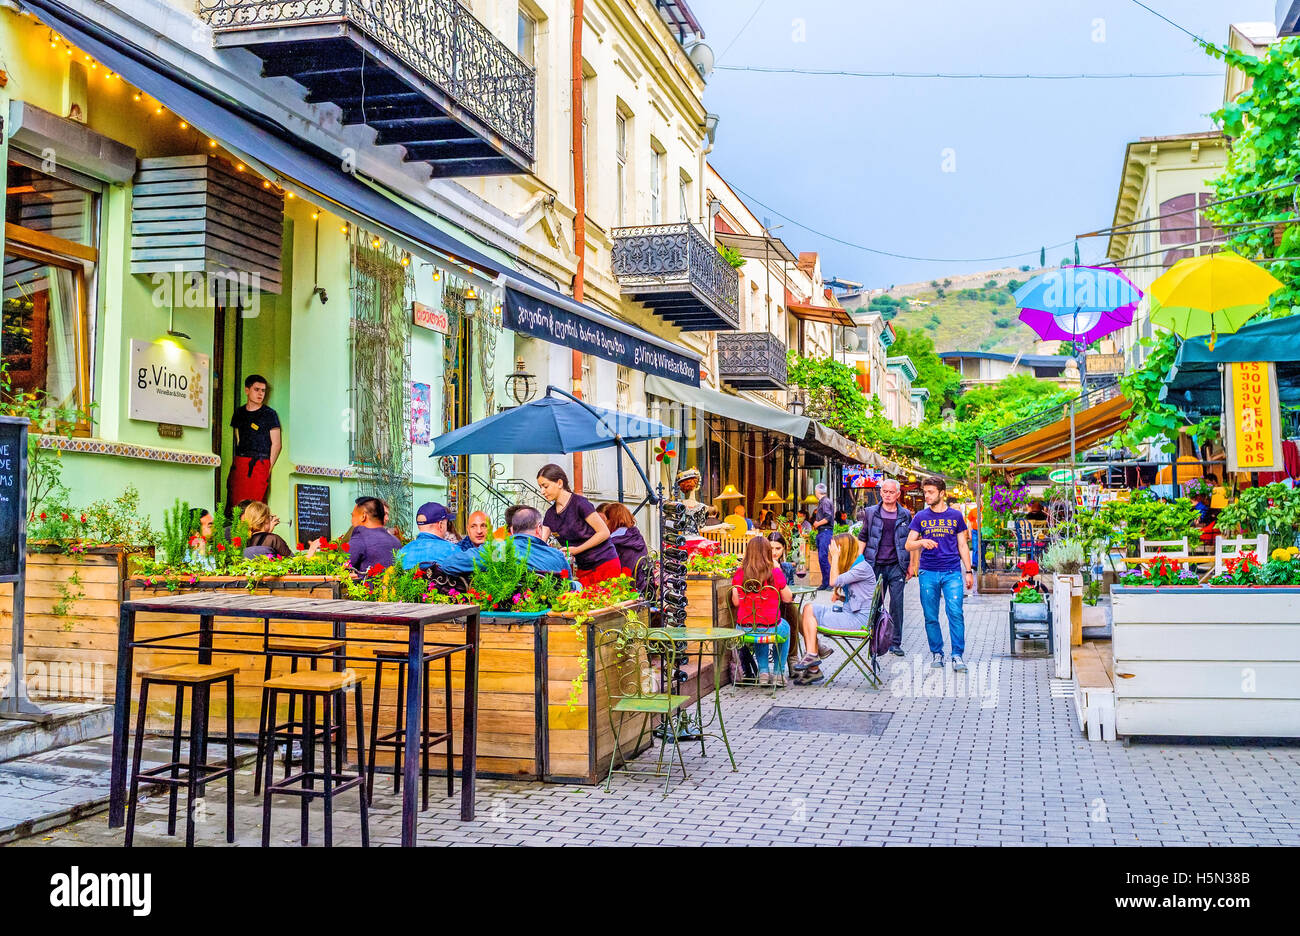 Les touristes apprécient la cuisine locale sur la terrasse d'un café, de Tbilisi Géorgie Banque D'Images